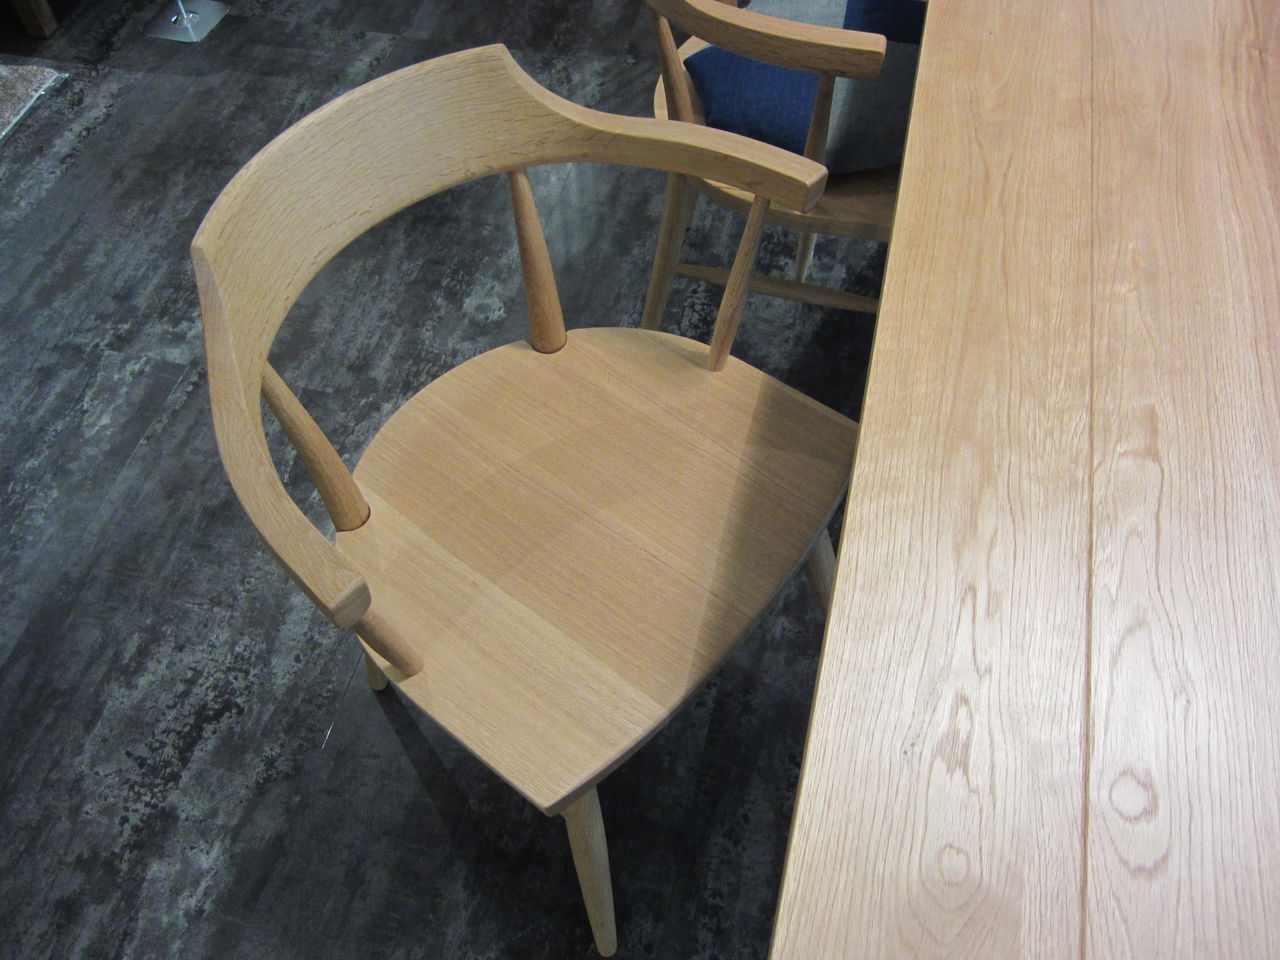 JAPAN INTERIOR STYLE sin BLOG : おしゃれな椅子専用座布団「おじゃみフラット」